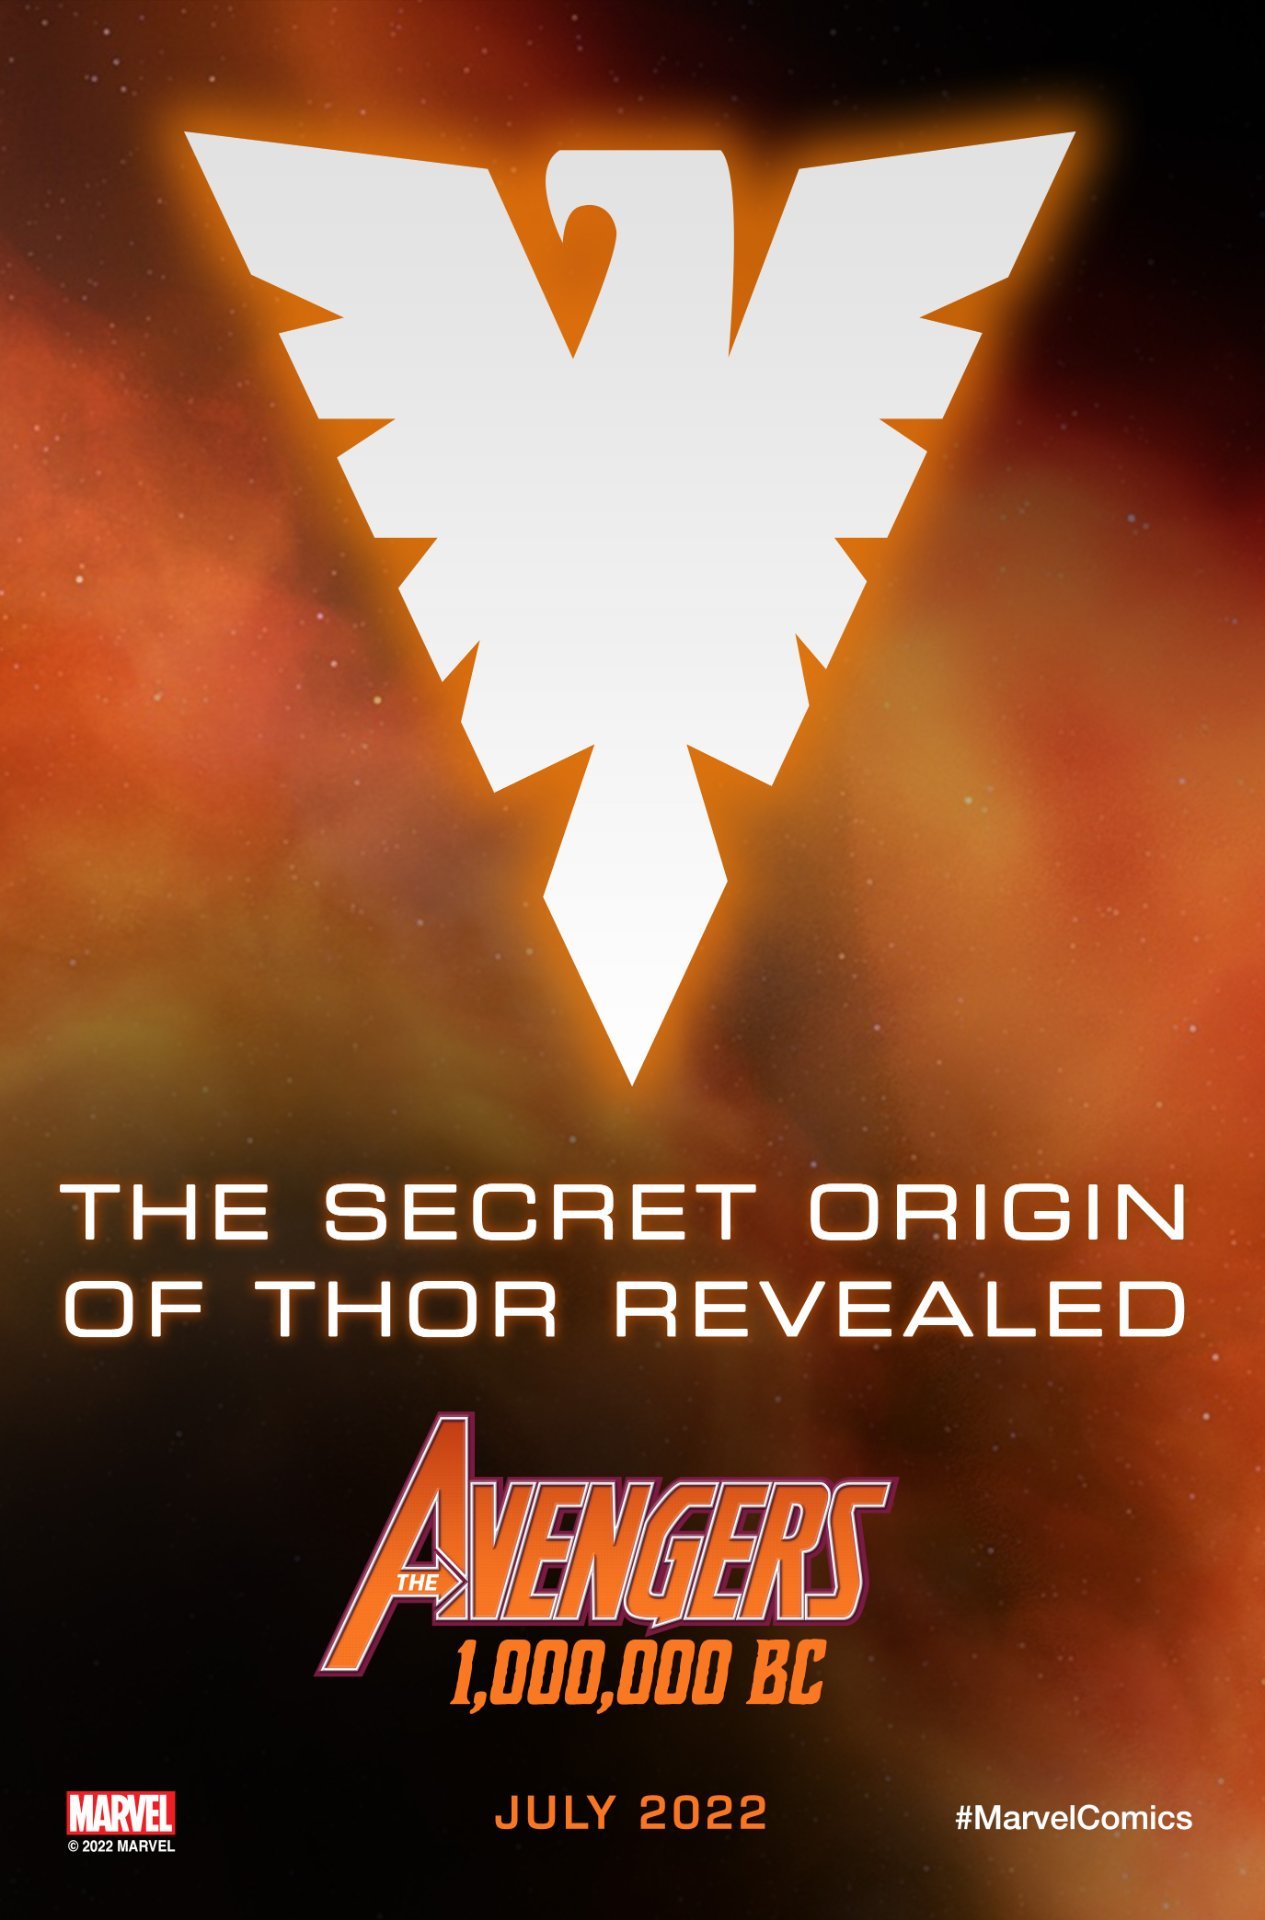 Le origini segrete di Thor nella serie degli Avengers preistorici 